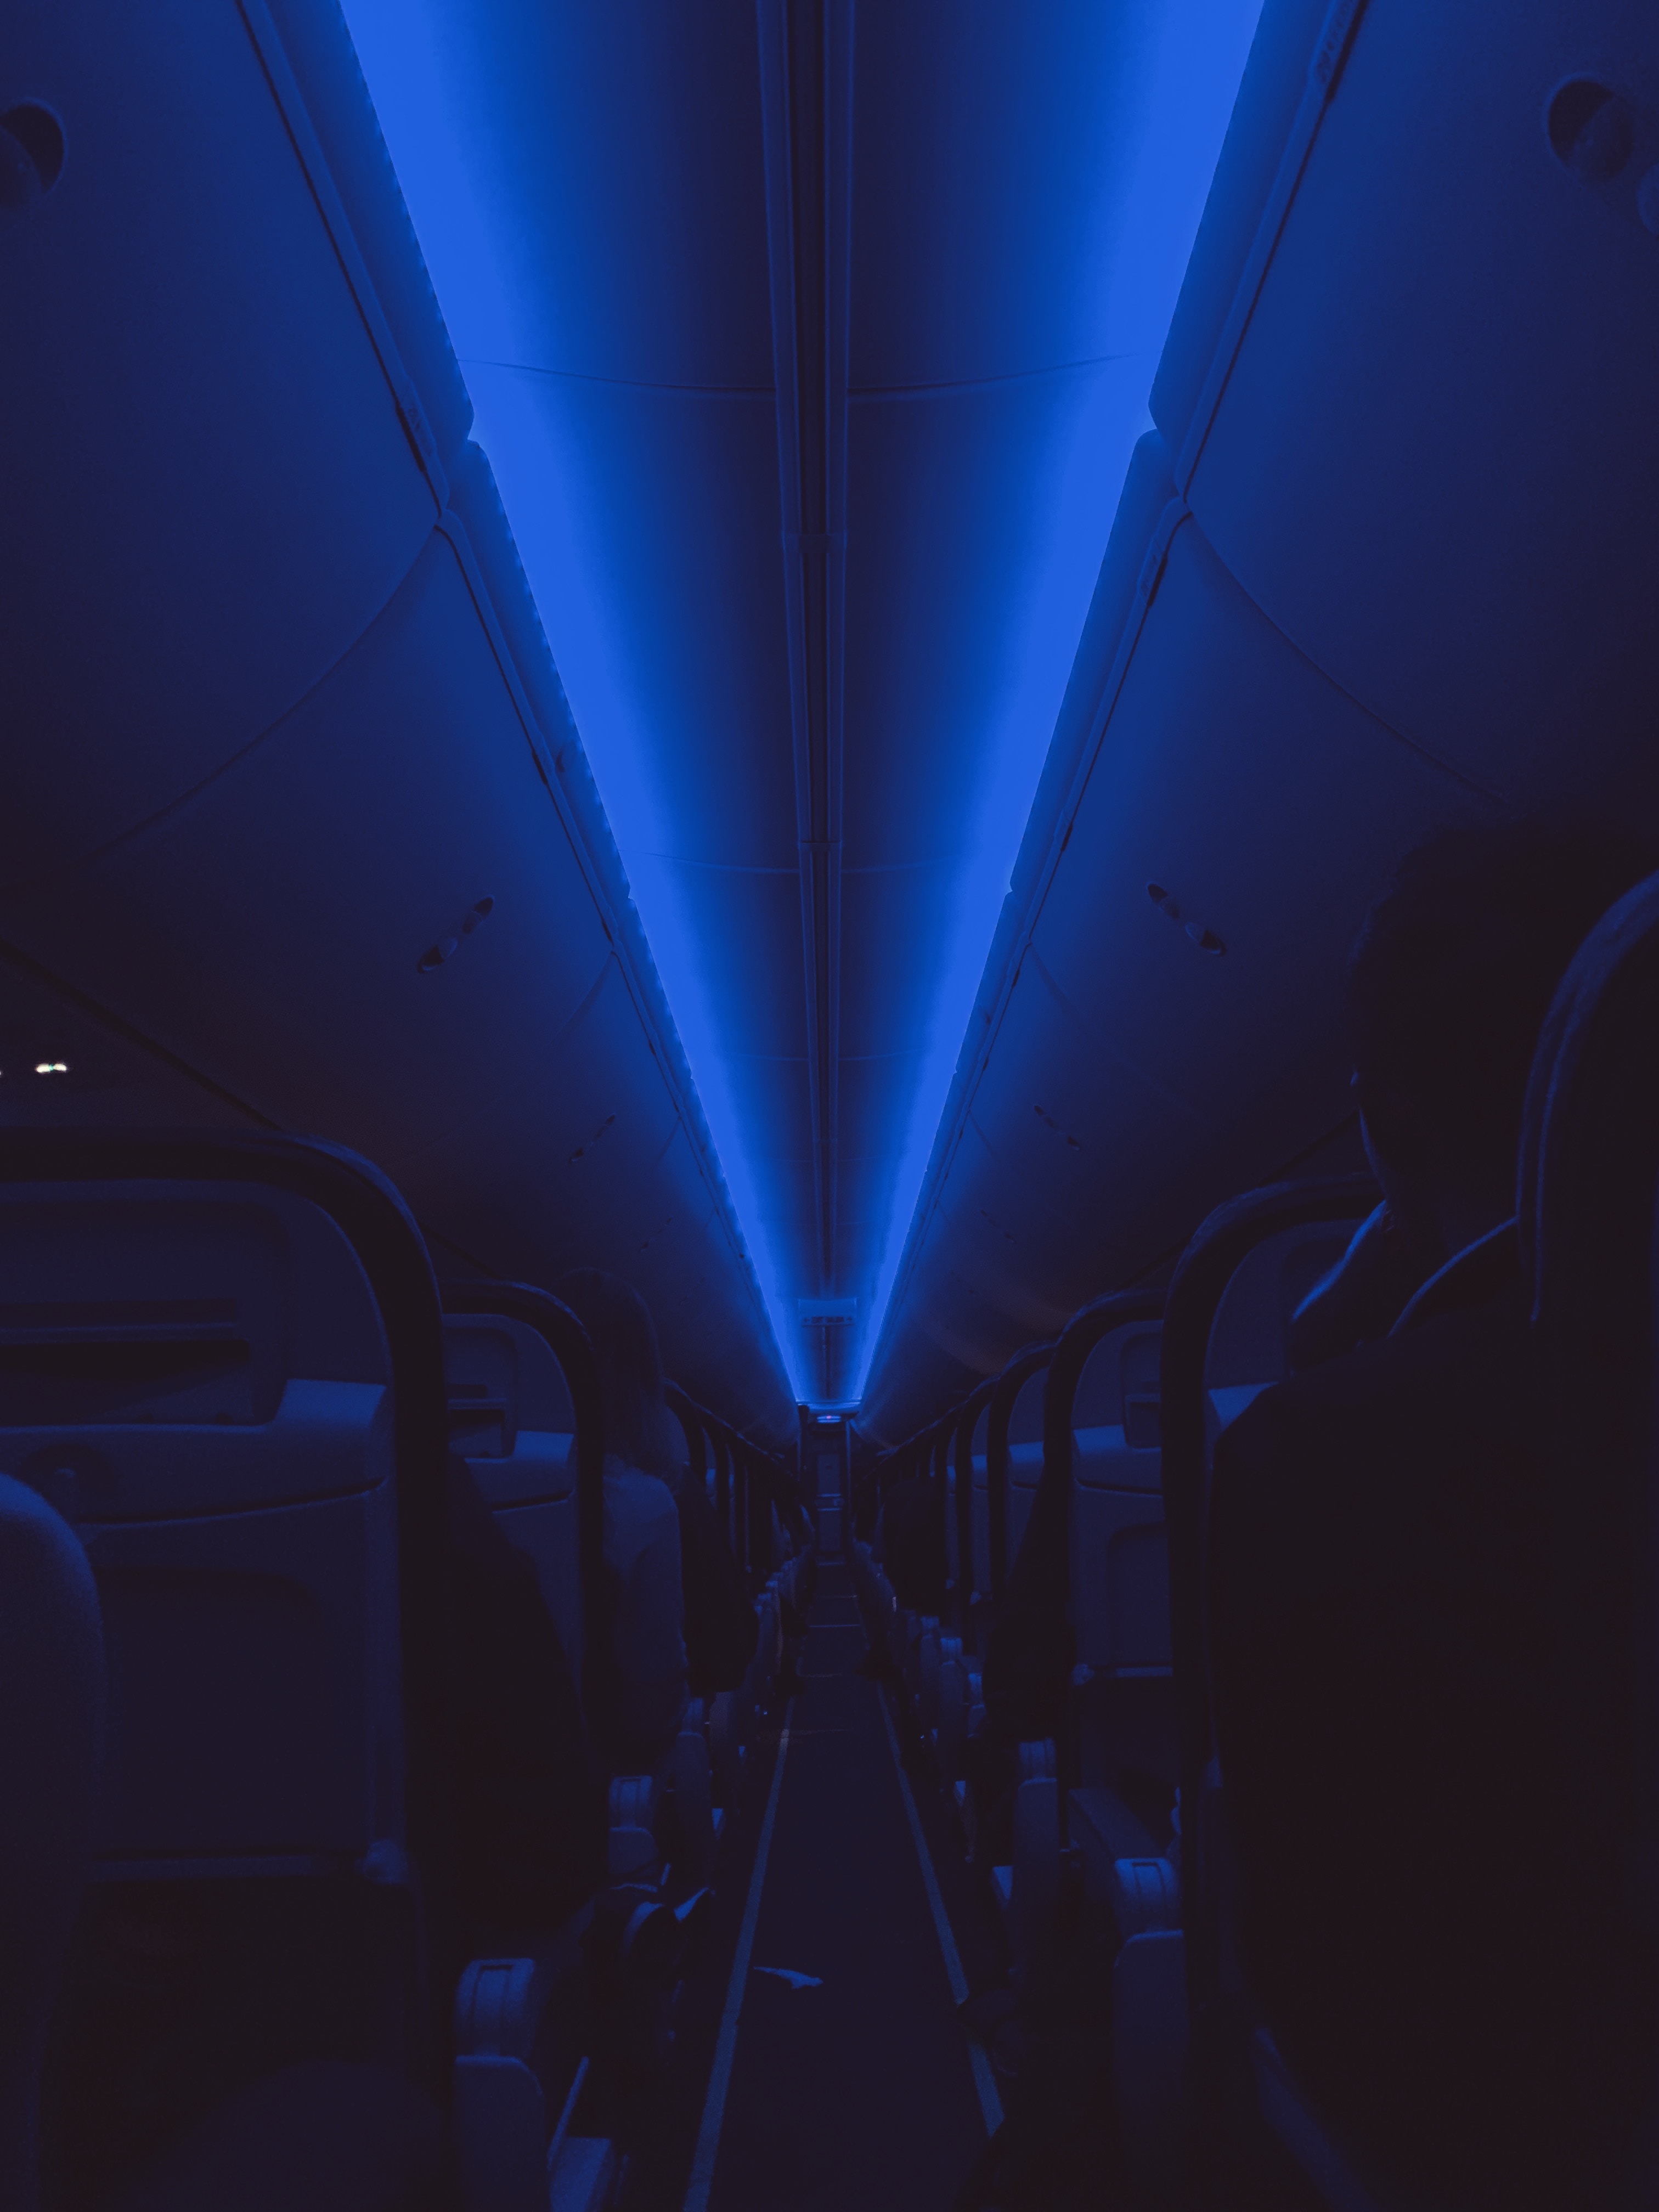 backlight, dark, illumination, board, ceiling, cabin 1080p